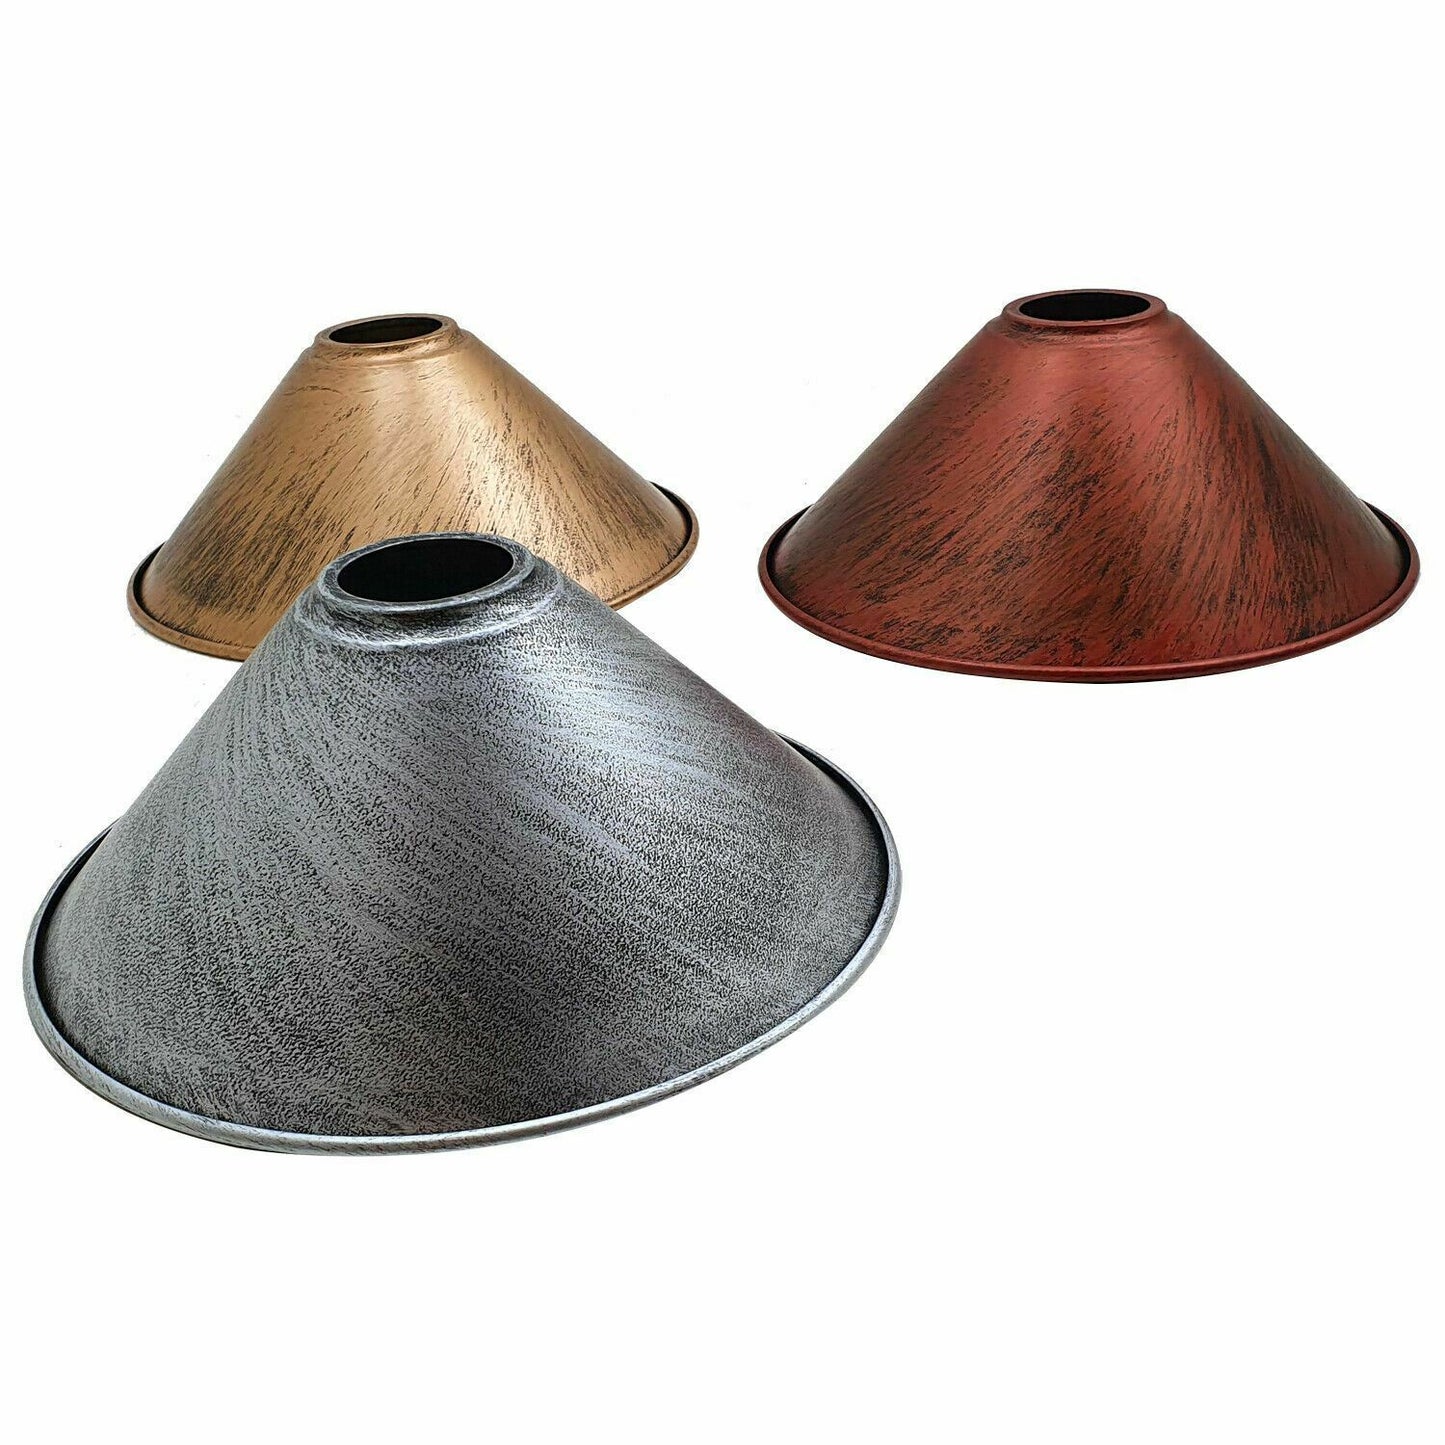 Cone Ceiling Lamp shades.JPG